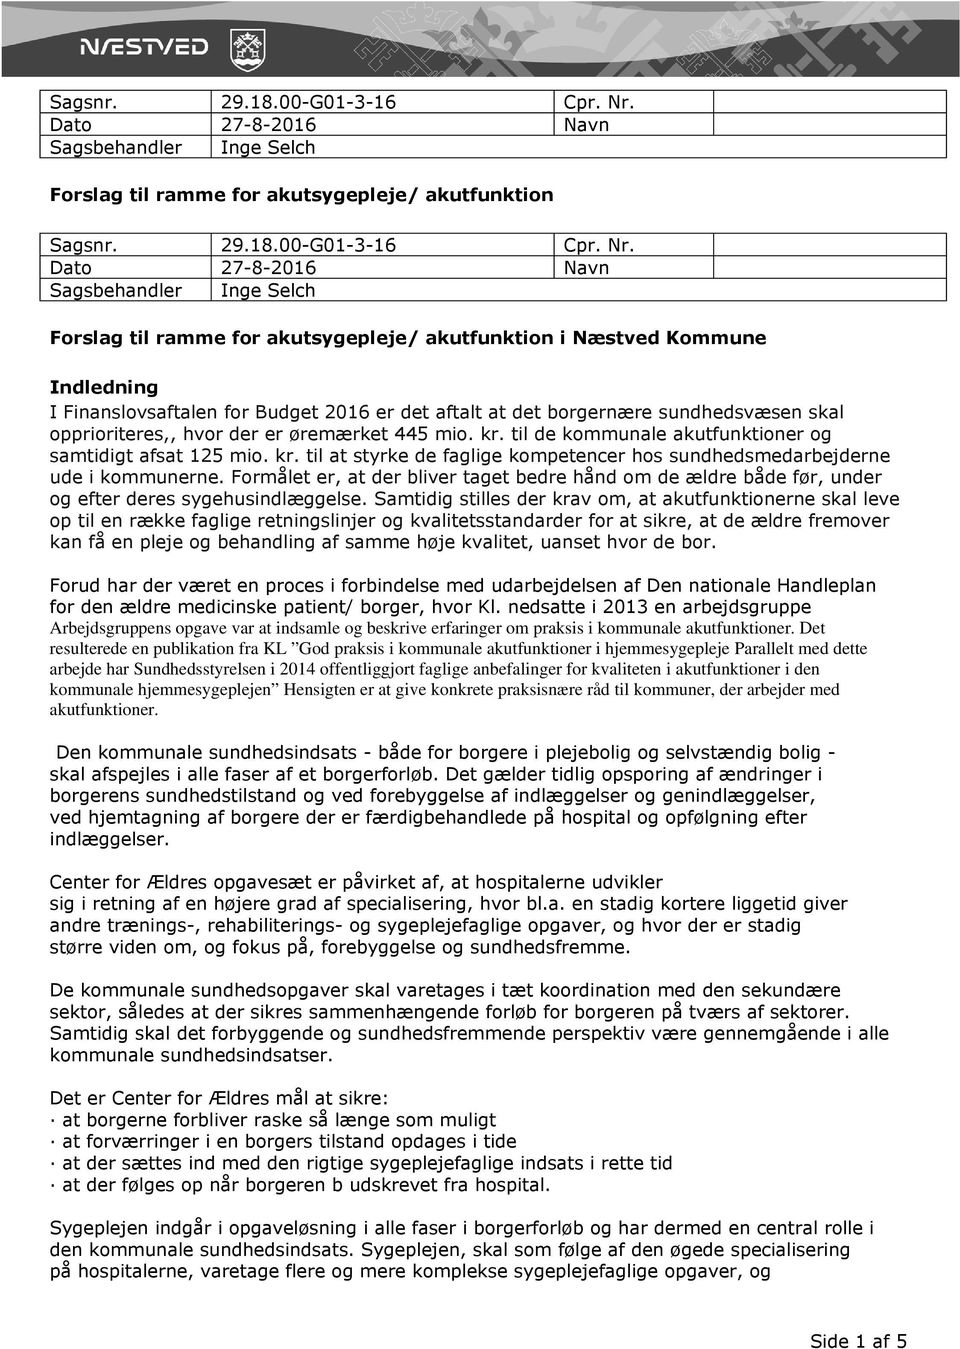 Forslag til ramme for akutsygepleje/ akutfunktion i Næstved Kommune - PDF  Free Download